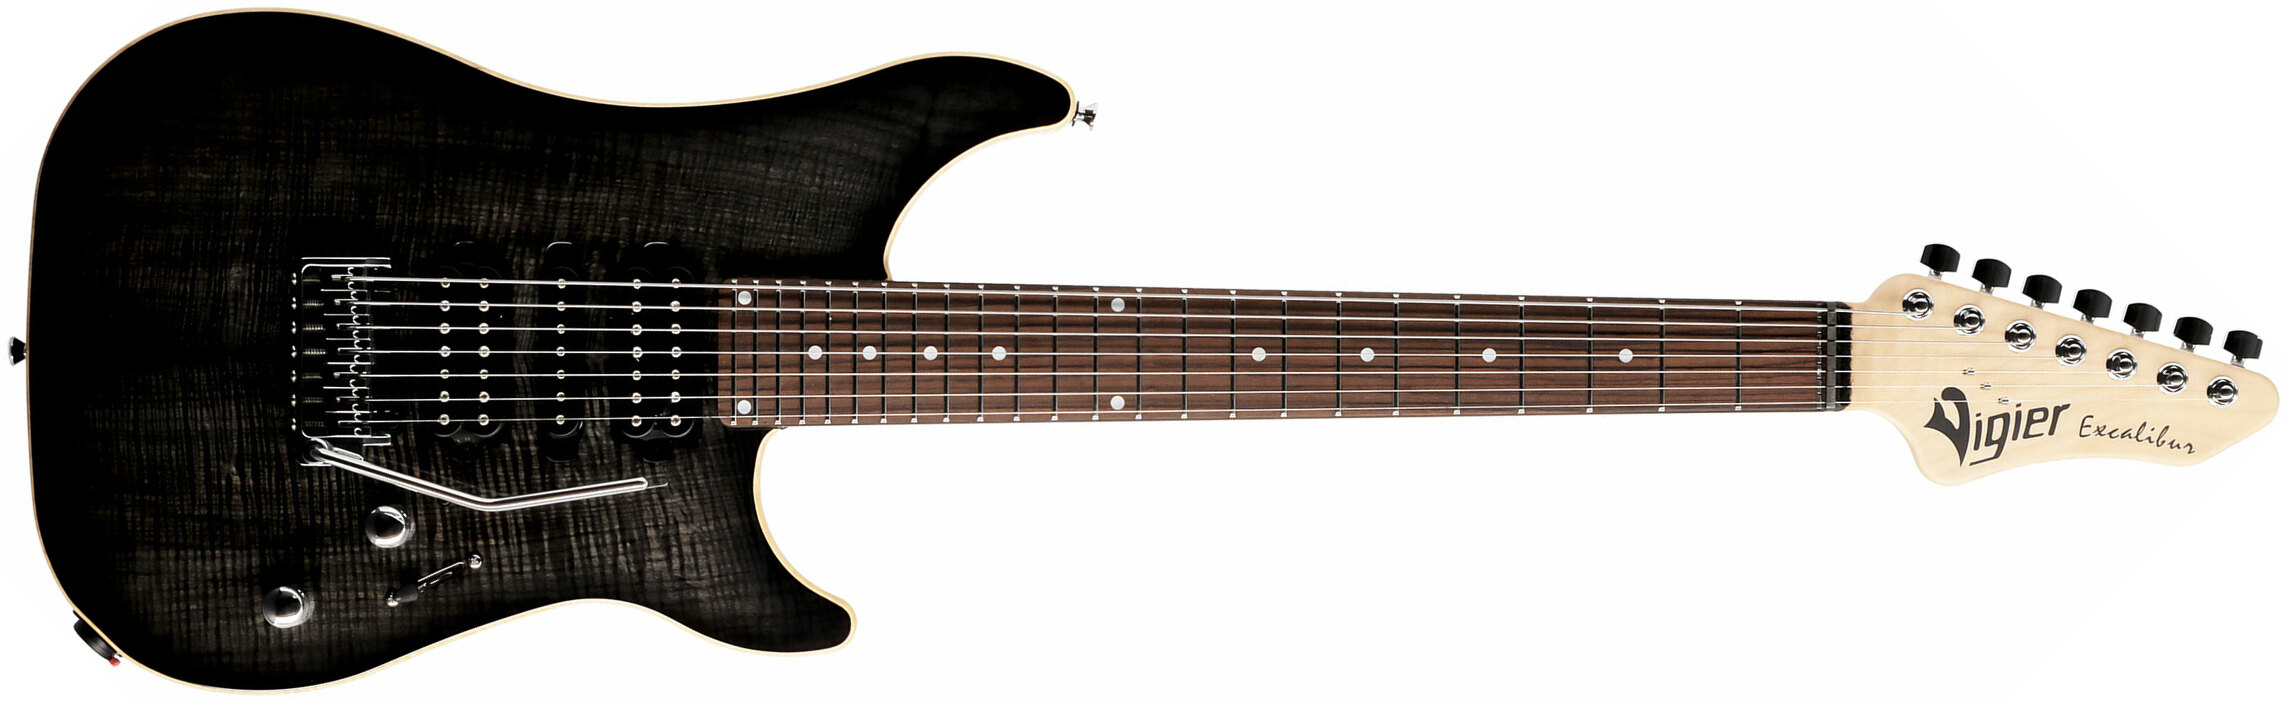 Vigier Excalibur Special 7 Hsh Trem Rw - Mysterious Black - Guitarra eléctrica de 7 cuerdas - Main picture